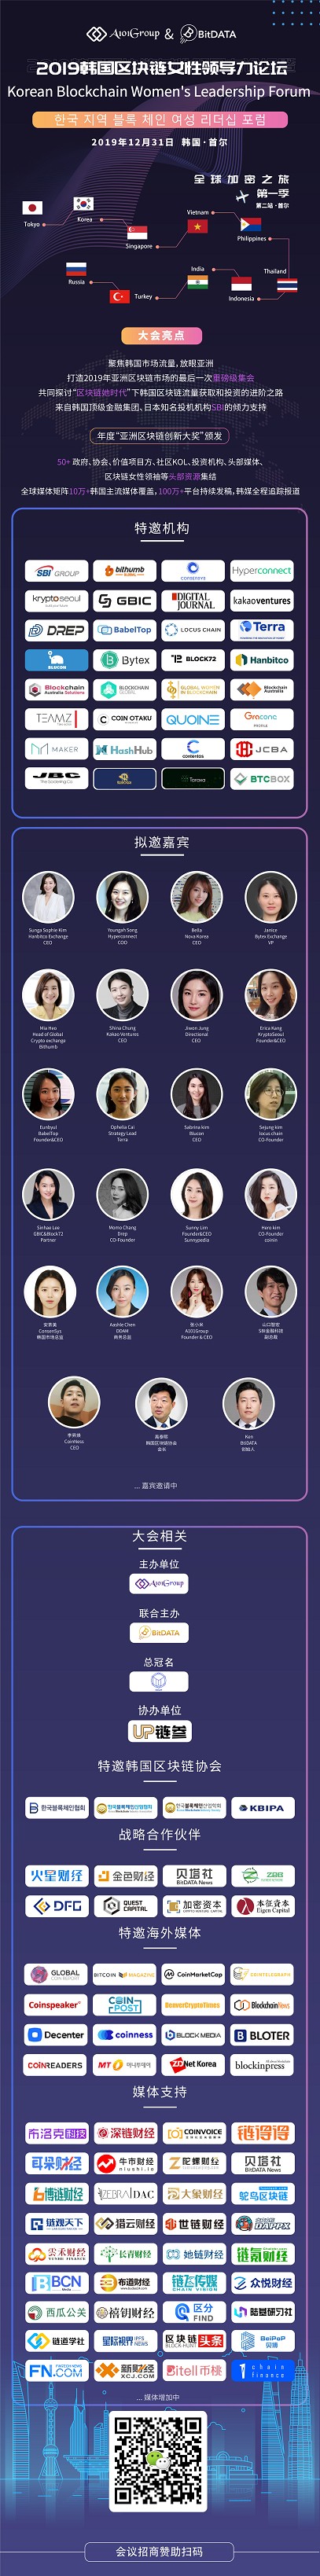 2019 한국 지역 블록체인 여성 리더십 포럼.jpg